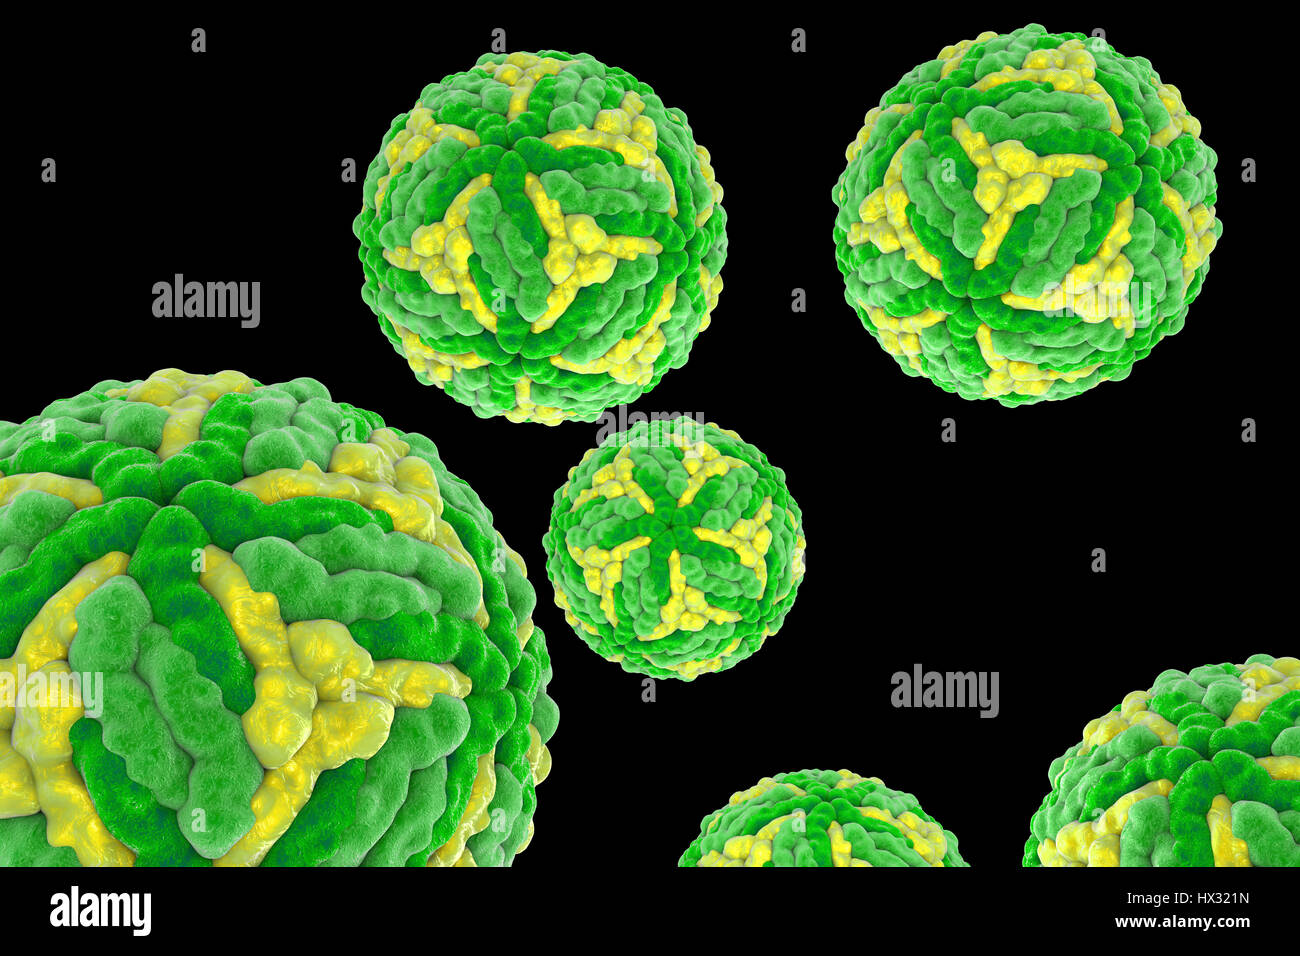 Japanische-Enzephalitis-Virus (JEV), Computer-Abbildung. JEV ist eine RNA (Ribonukleinsäure)-Virus aus der Familie der Flaviviridae. Es wird von Culex SP. Mücke übertragen und verursacht Enzephalitis (Entzündung des Gehirns). Stockfoto